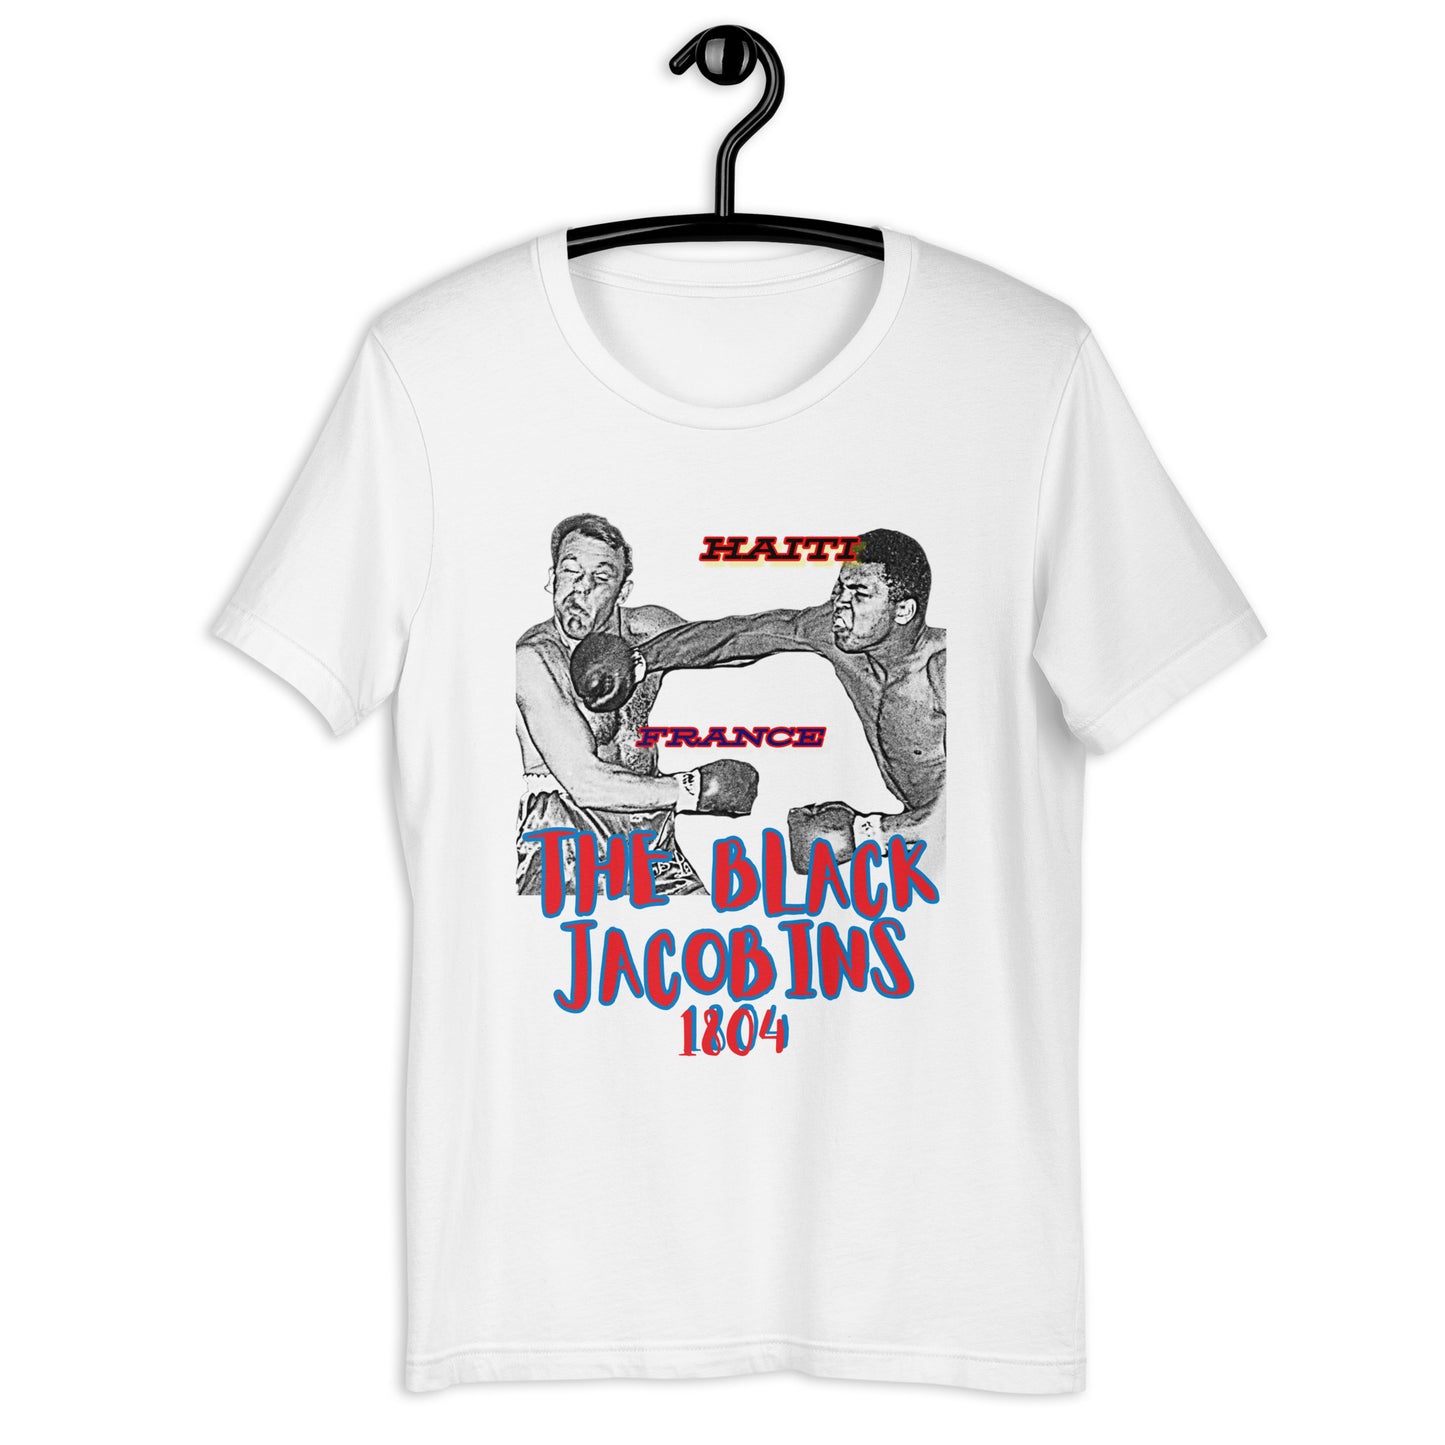 The Black Jacobins - Redux